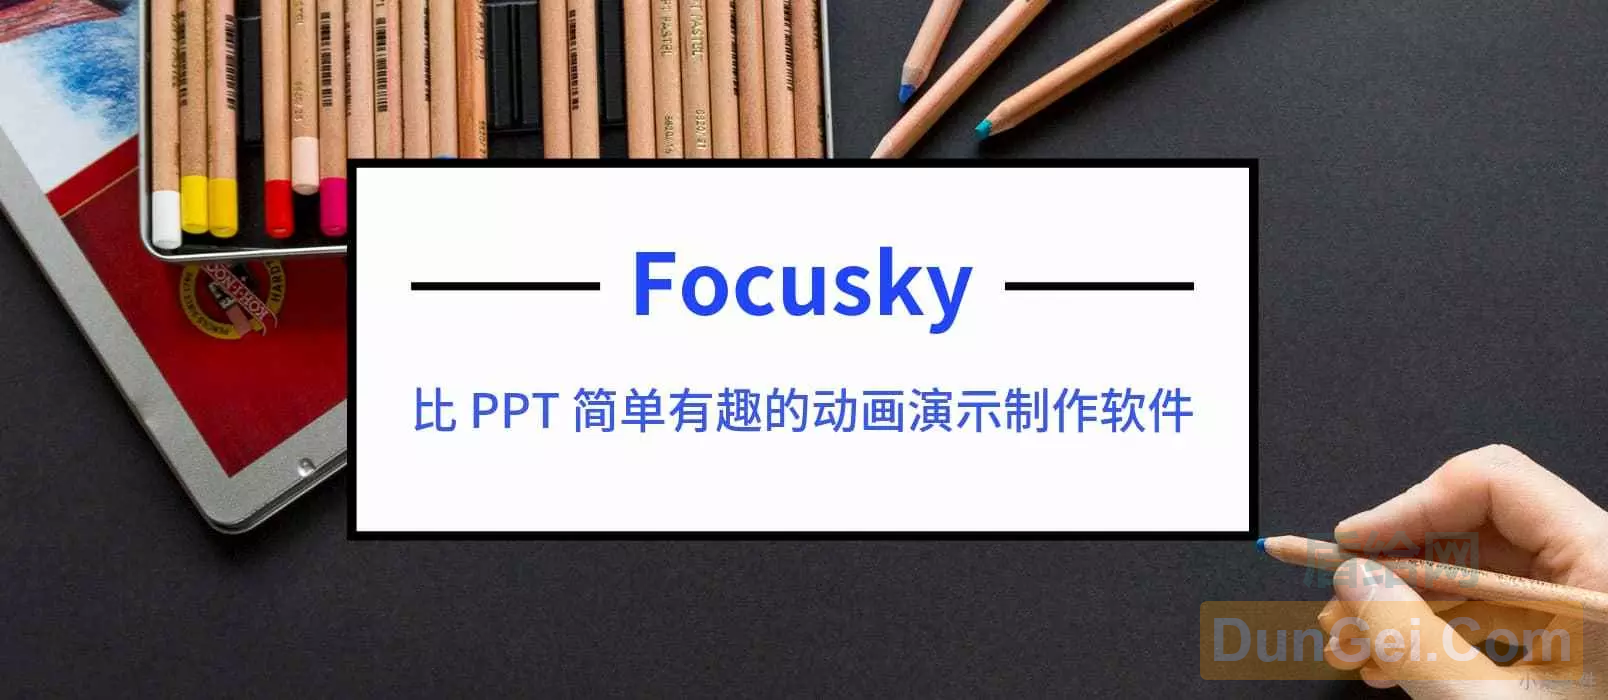 制作炫酷动画PPT的软件 – Focusky 送3000个 特别版激活码[Windows]-度崩网-几度崩溃